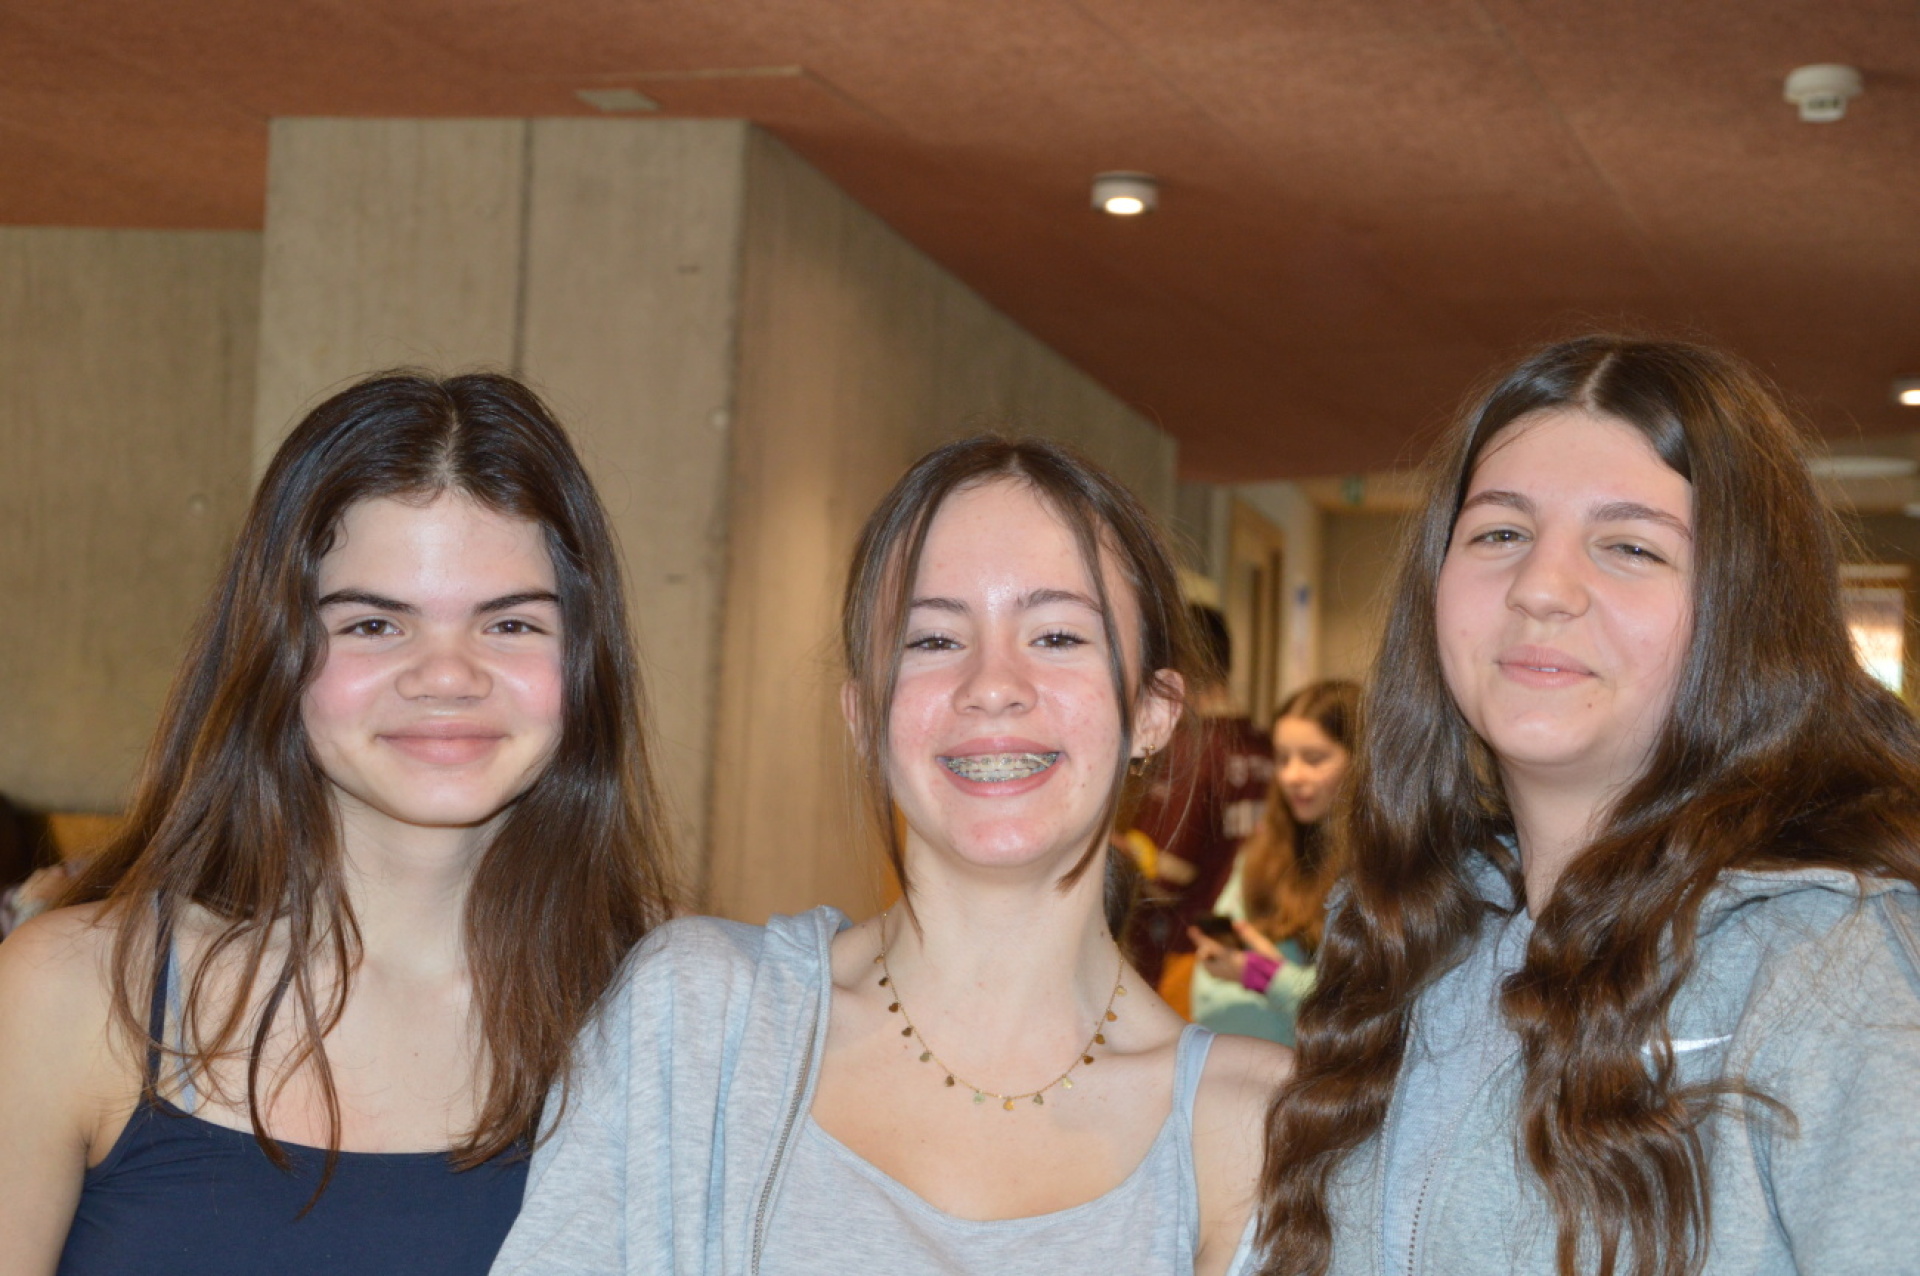 Dania, Gioia und Sanja gehen in Arlesheim zur Schule, sind Freundinnen und fanden die Woche ziemlich lustig, auch wenn sie nicht im gleichen Zimmer untergebracht waren. (Foto: AvS)